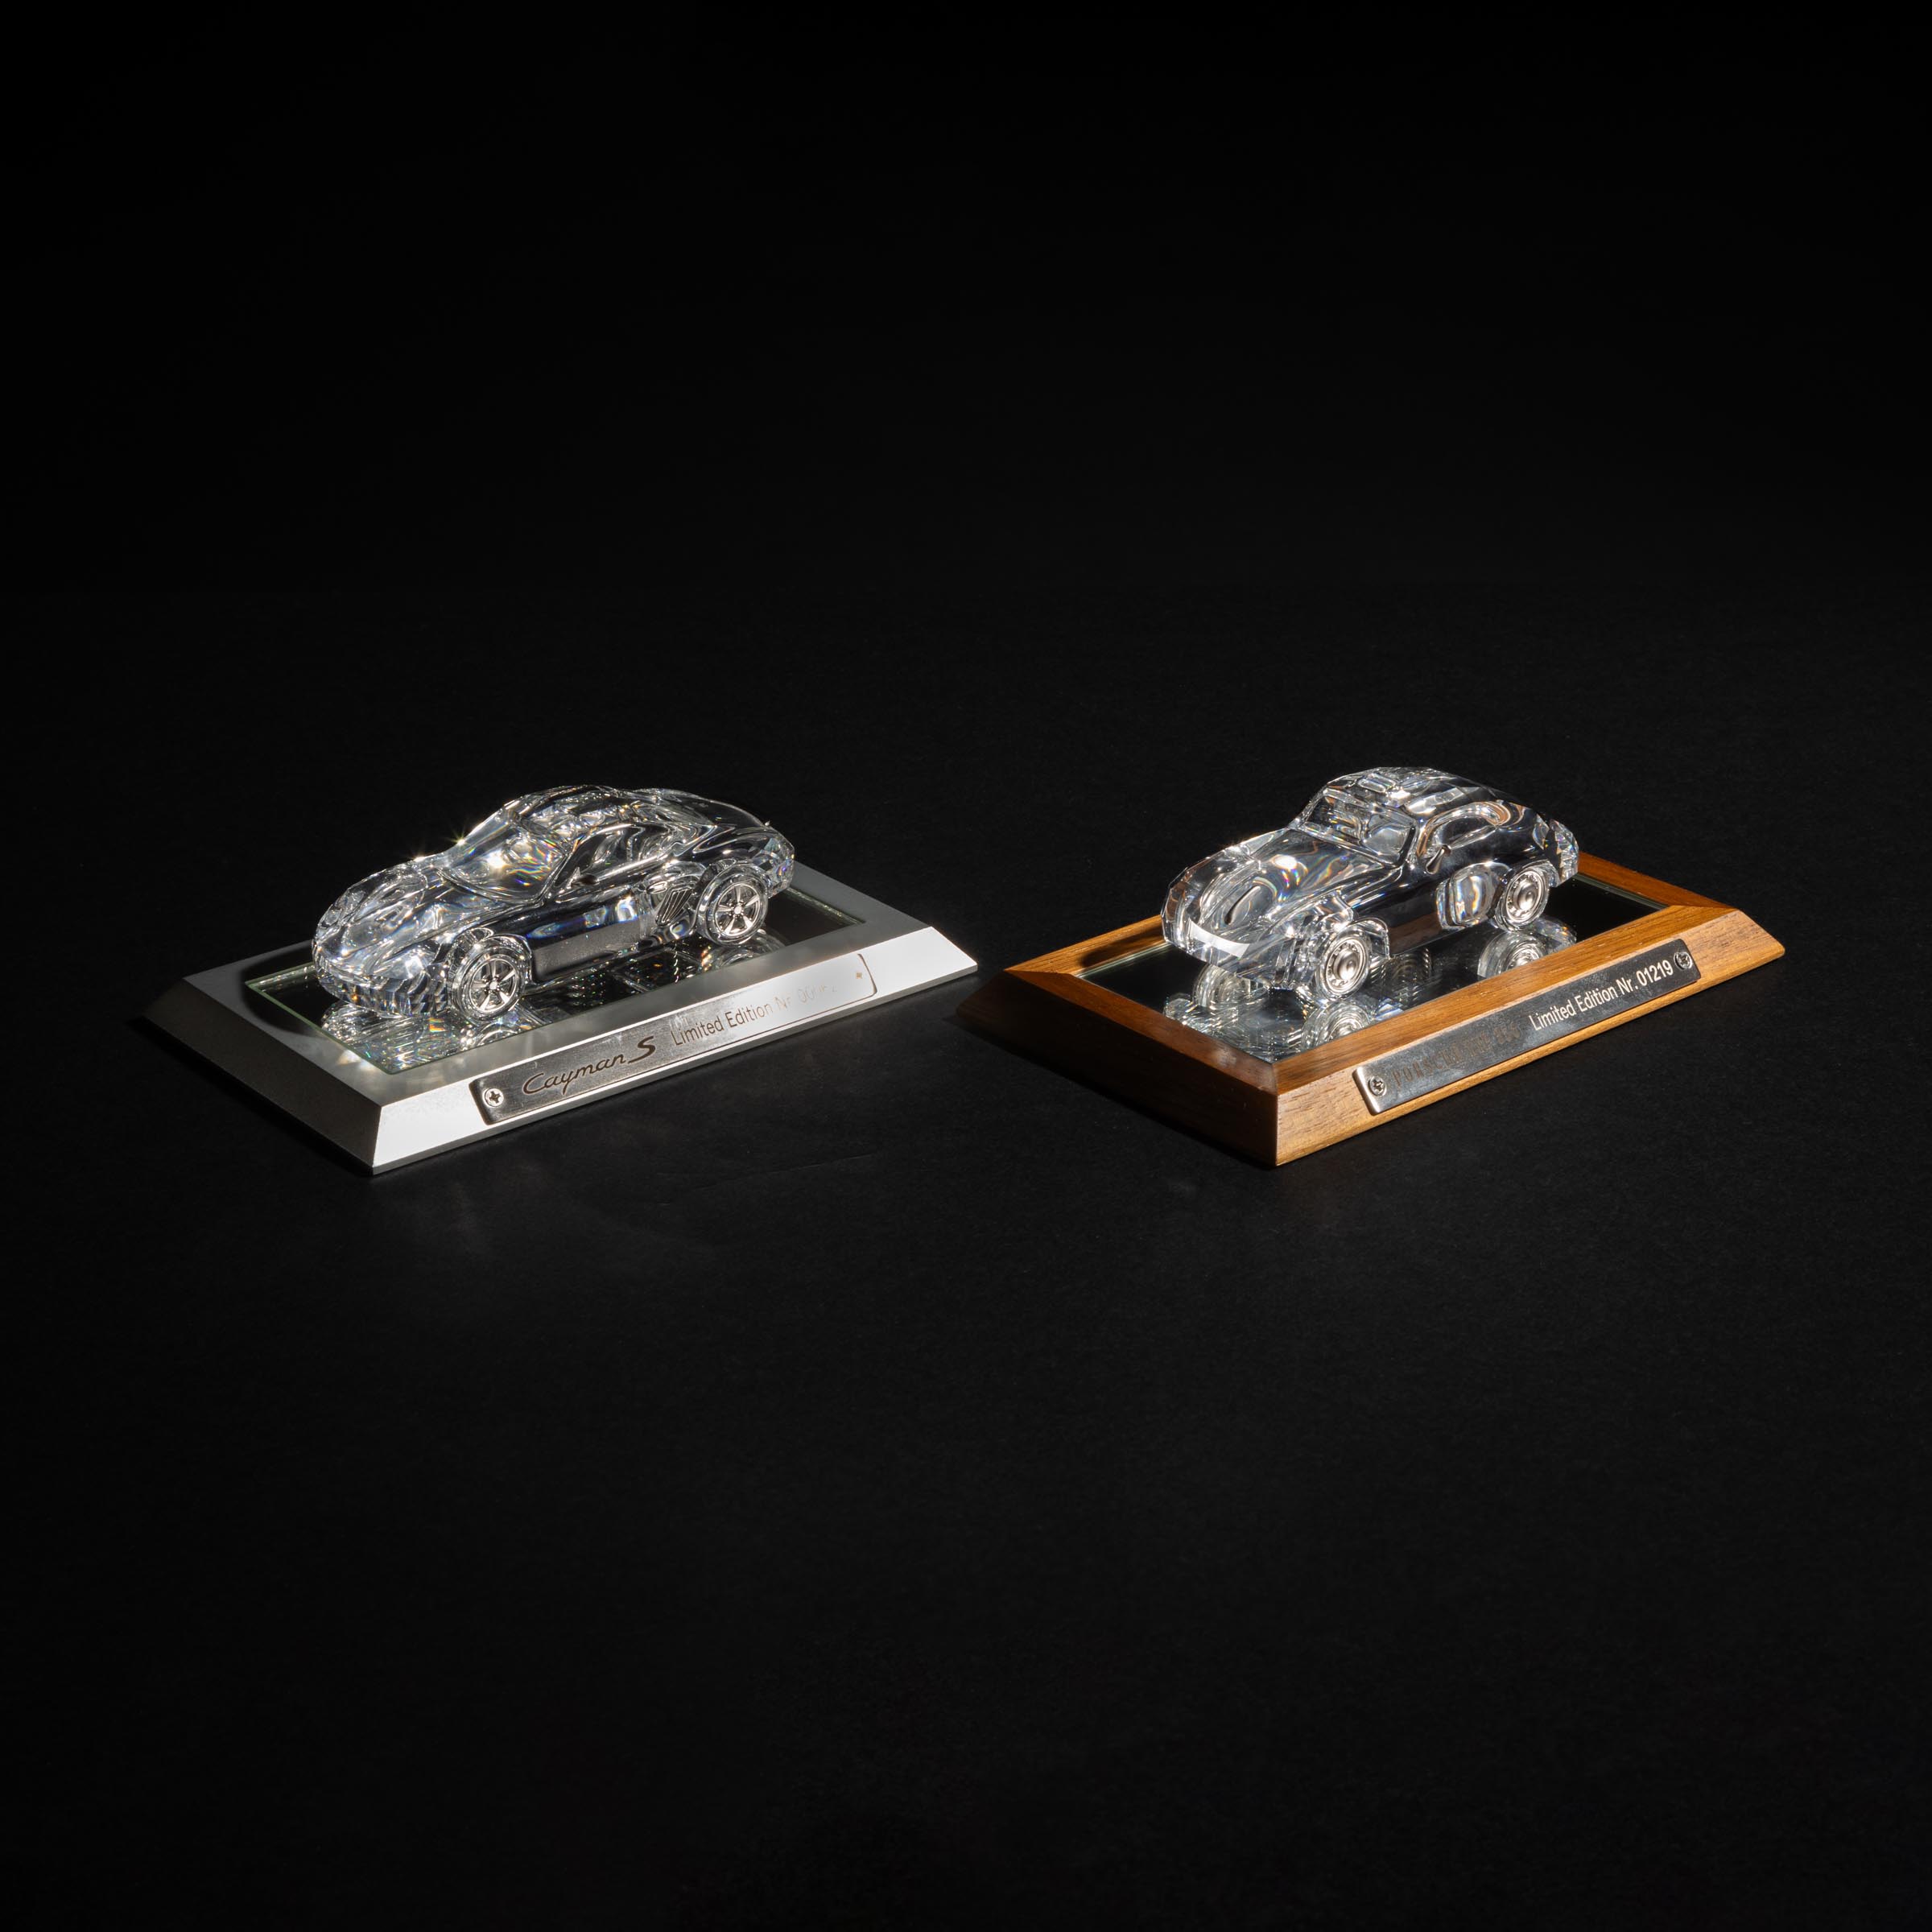 Two Swarovski Crystal Limited Edition 2fb0748